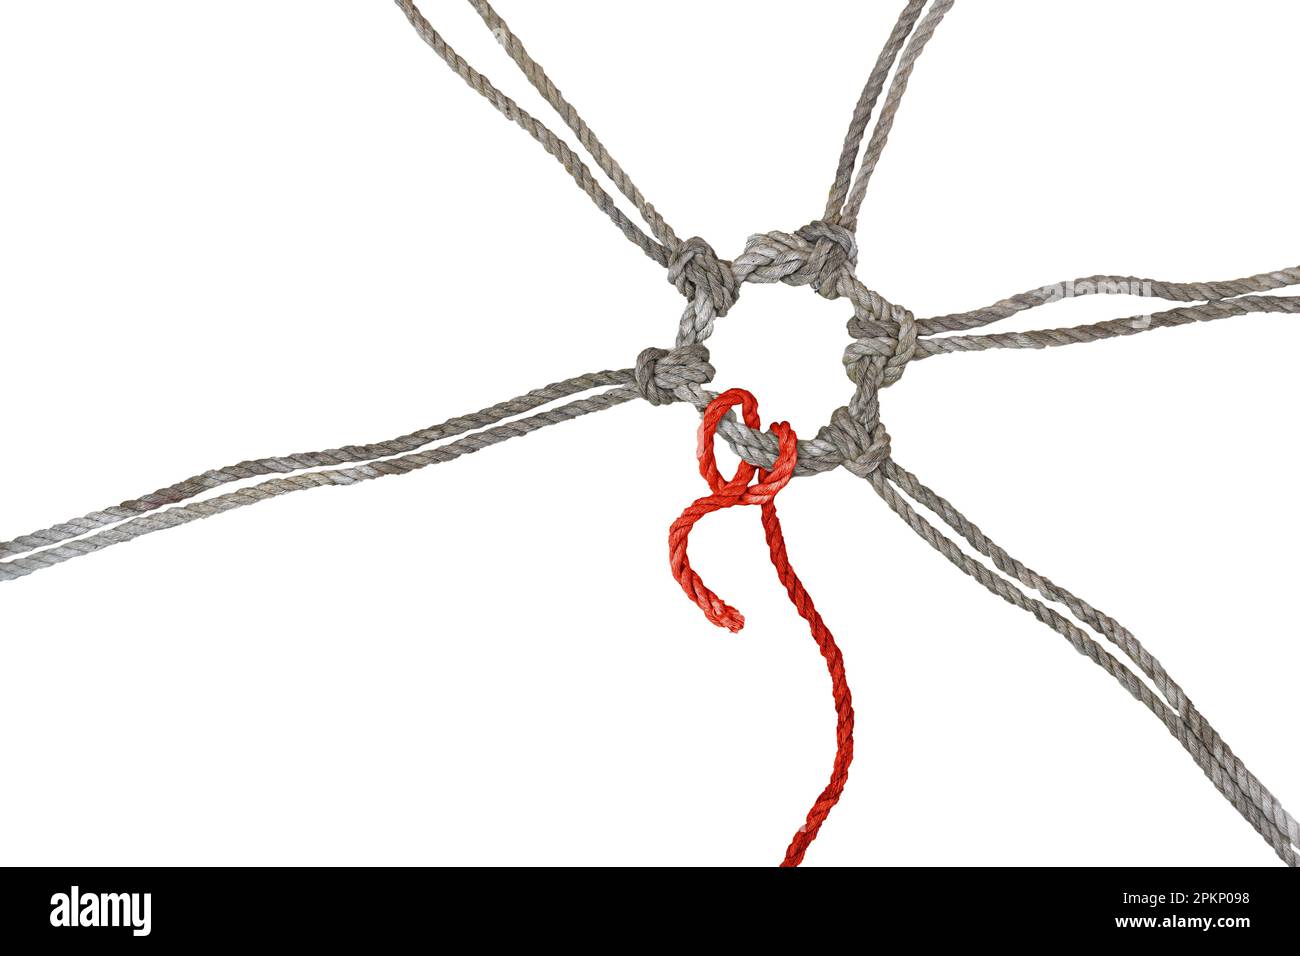 Les cordes rustiques se rejoignent dans un anneau noué, l'un d'entre eux en rouge a une fin lâche, concept entre cohésion, individualisme et burnout, isolé sur un W. Banque D'Images